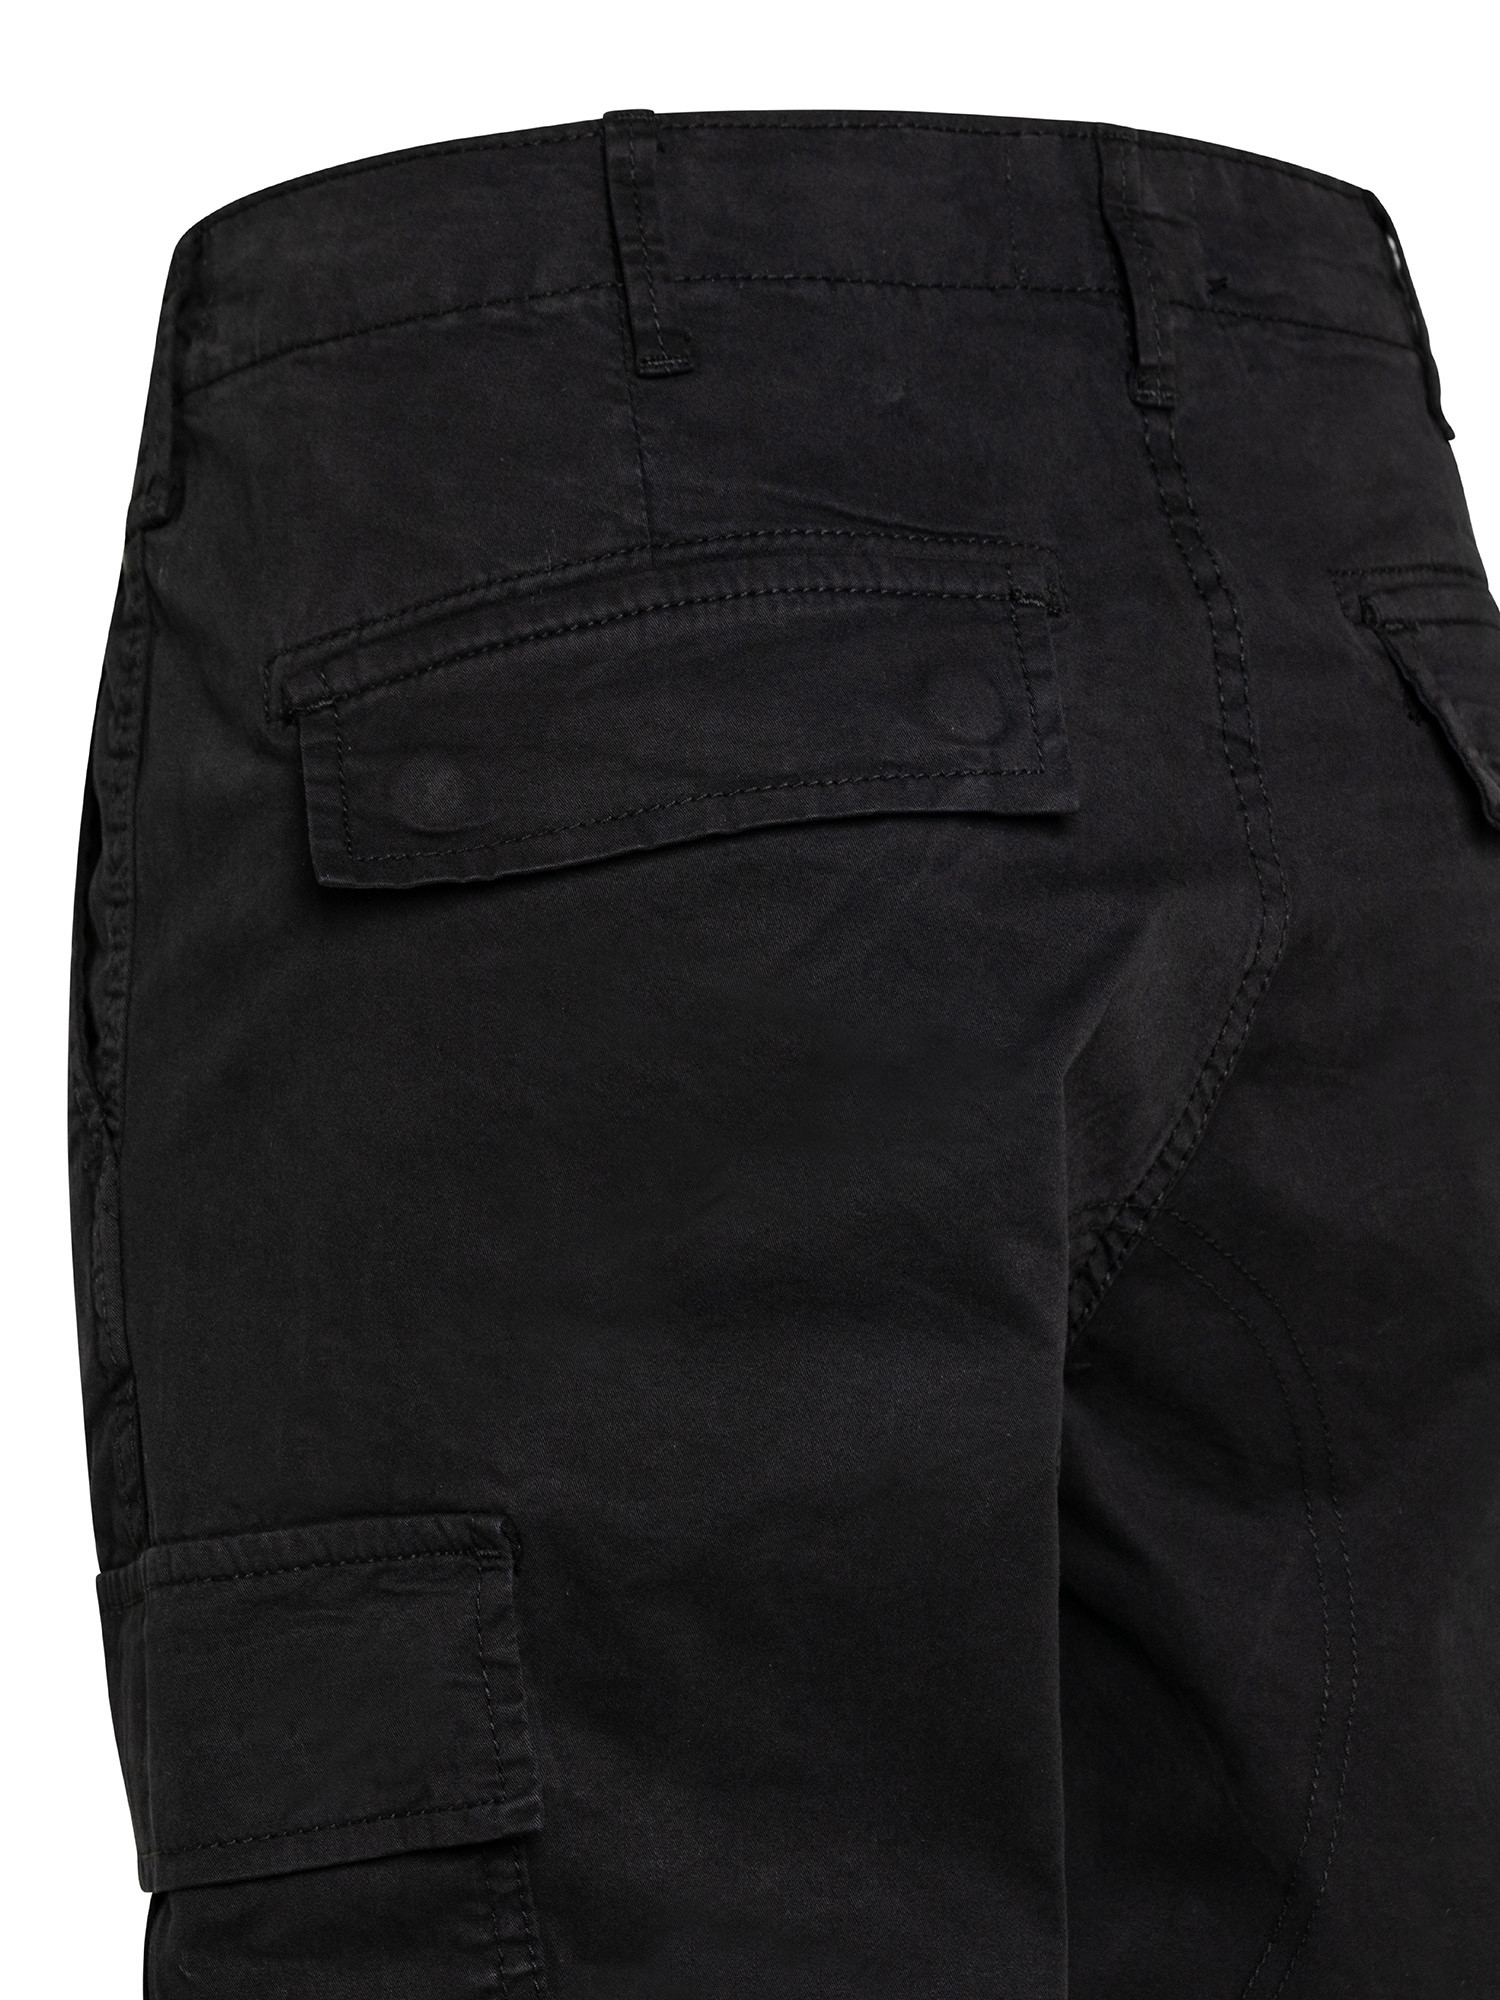 Pantaloni cargo con tasche laterali, Nero, large